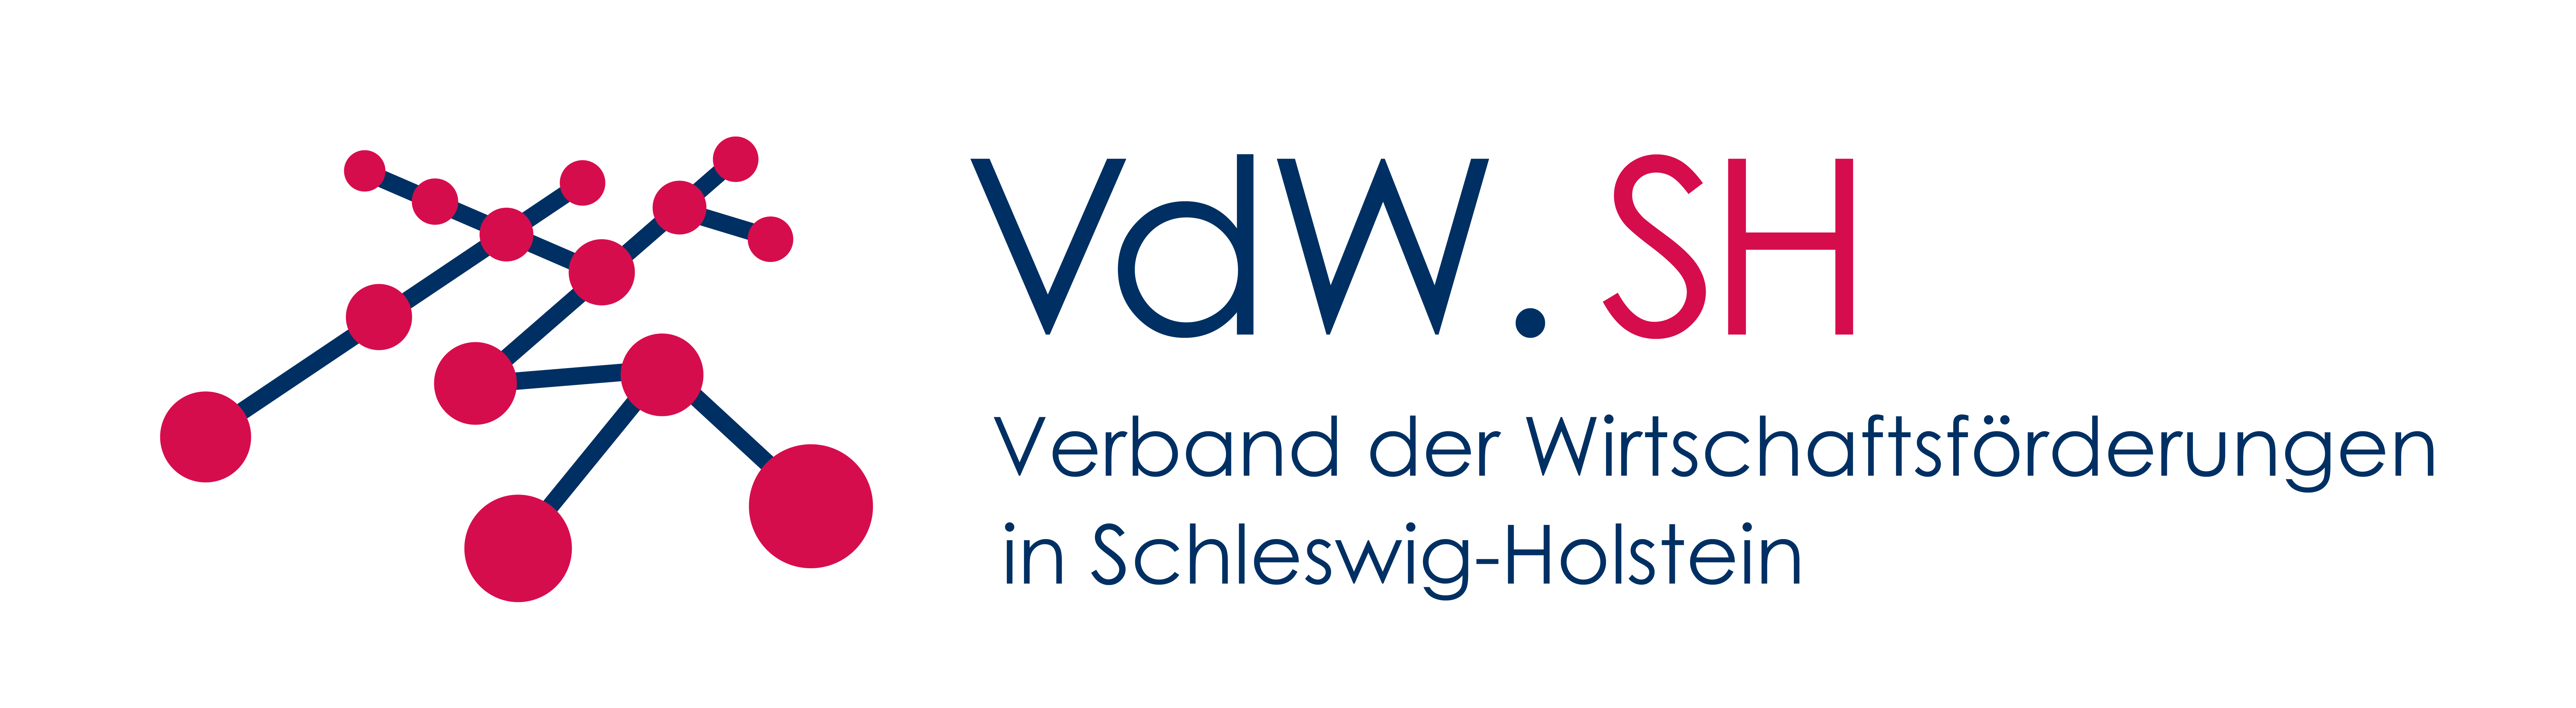 Neuer Verband der Wirtschaftsförderungen in  Schleswig-Holstein (VdW.SH) gegründet